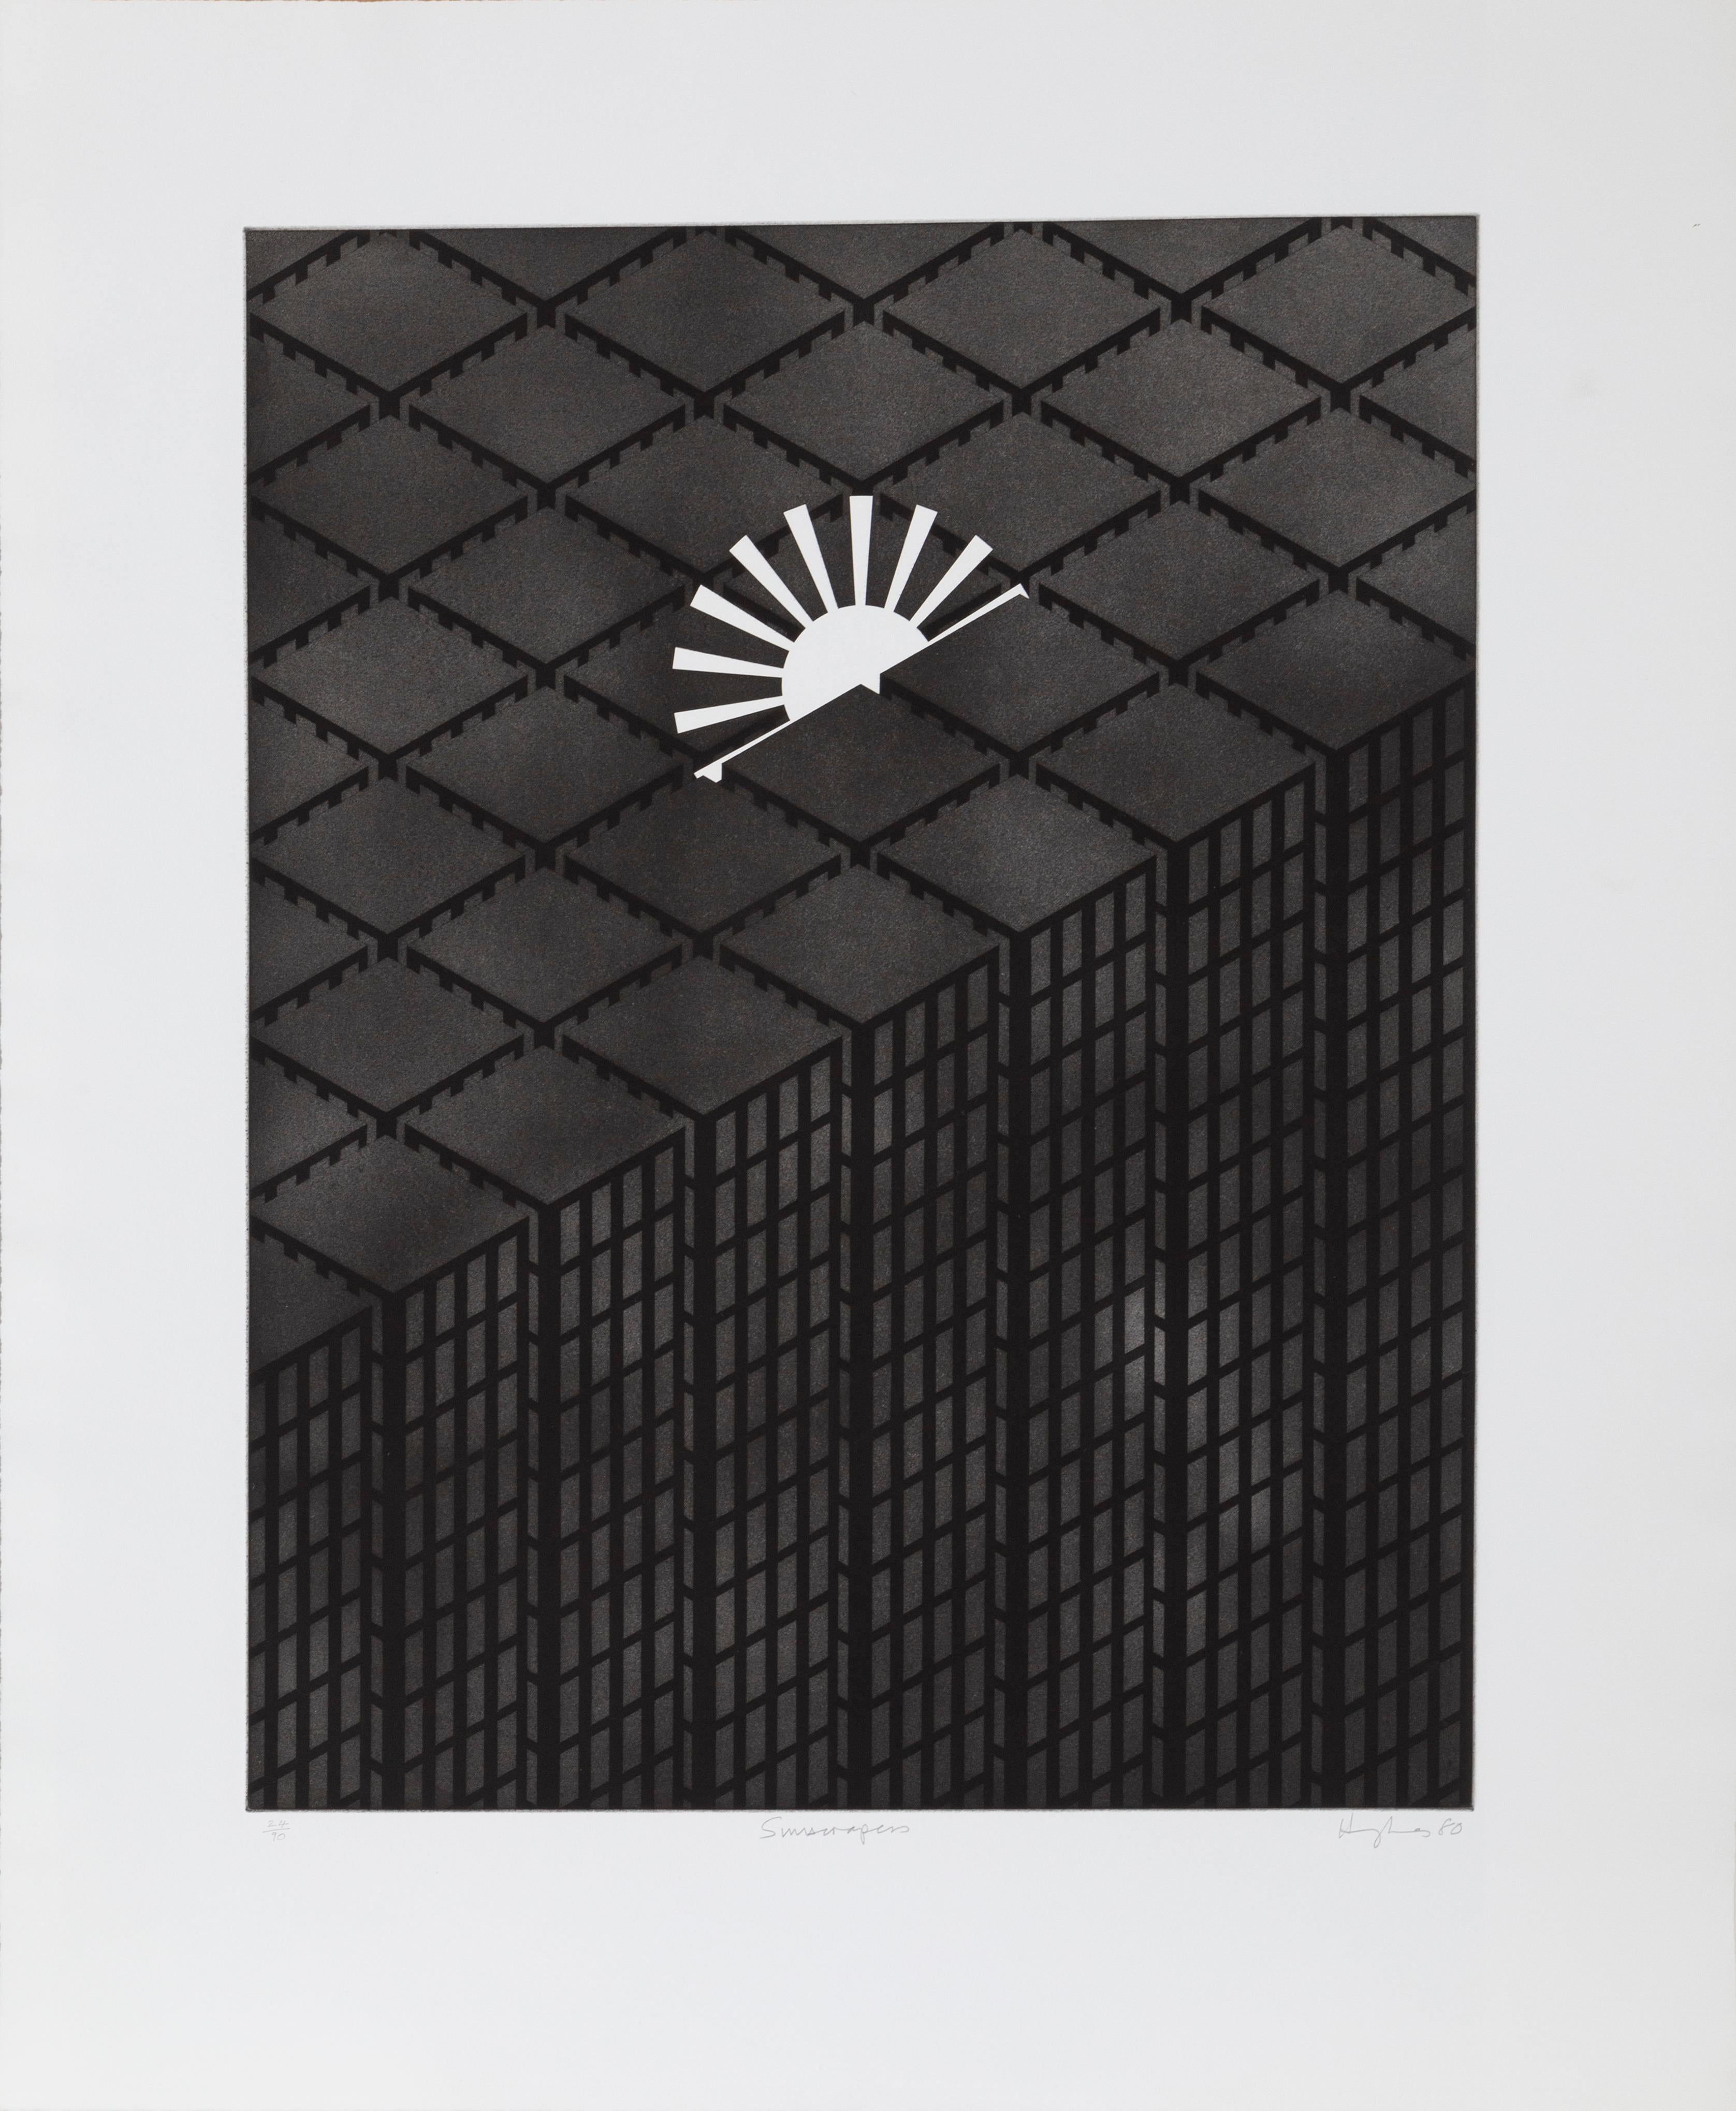 Sonnenkratzer, Geometrische abstrakte Aquatinta-Radierung von Patrick Hughes